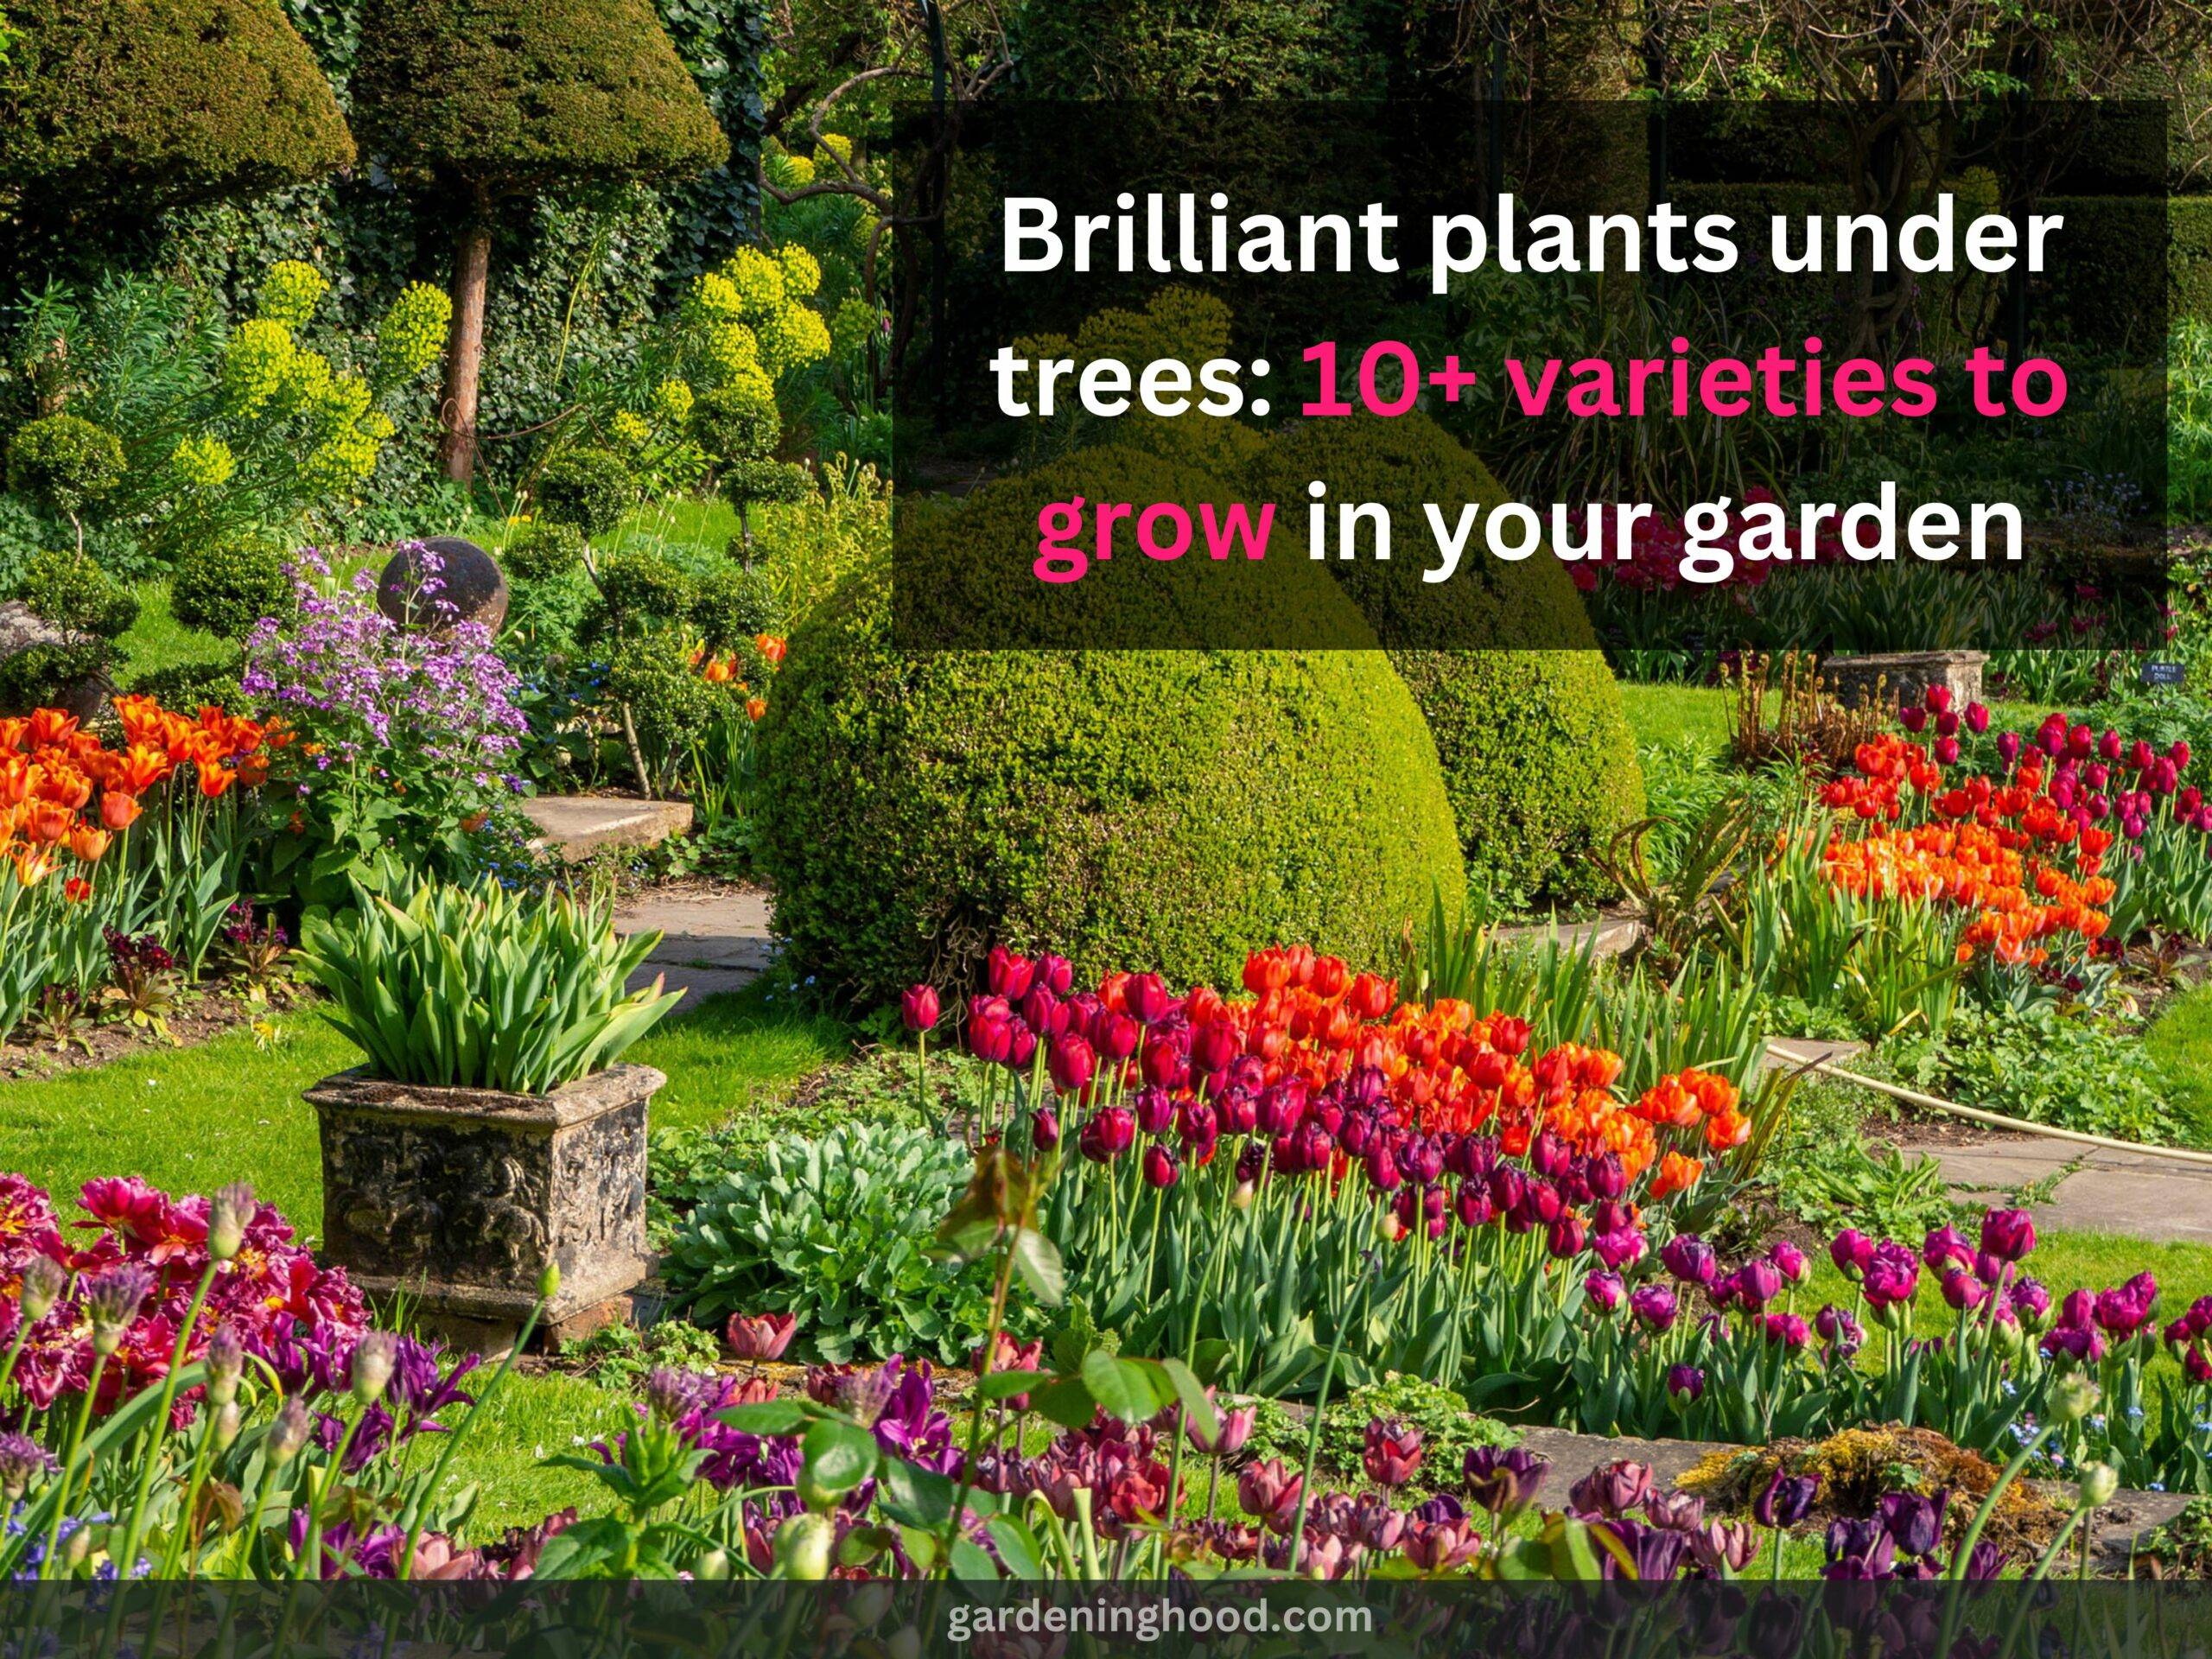 Brilliant plants under trees: 10+ varieties to grow in your garden